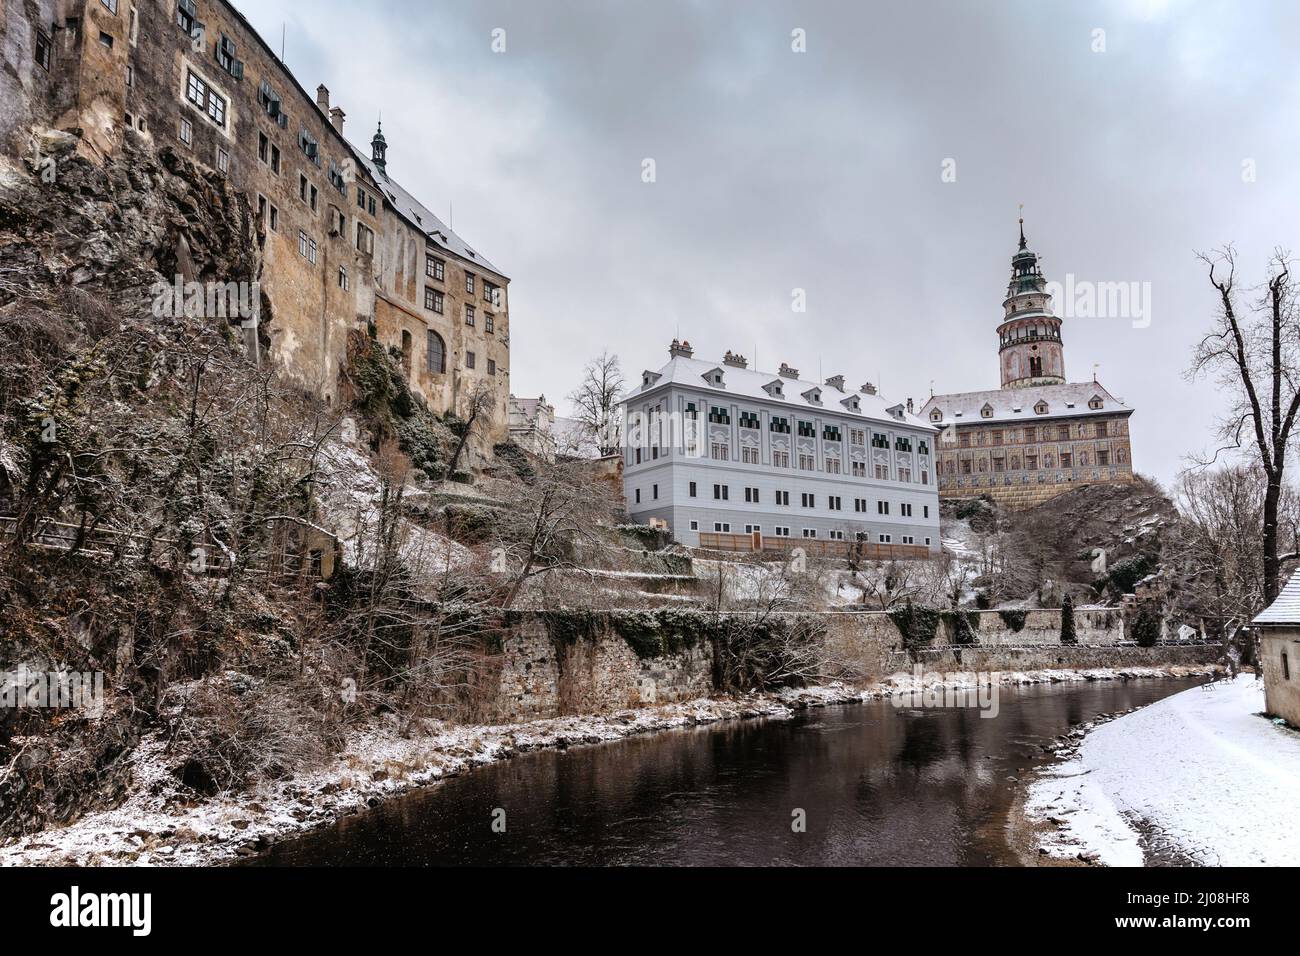 Cesky Krumlov, Tschechische Republik.berühmte tschechische mittelalterliche Stadt mit Renaissance- und Barockschloss auf einem steilen Felsen über der Moldau.UNESCO-Weltkulturerbe.Urba Stockfoto